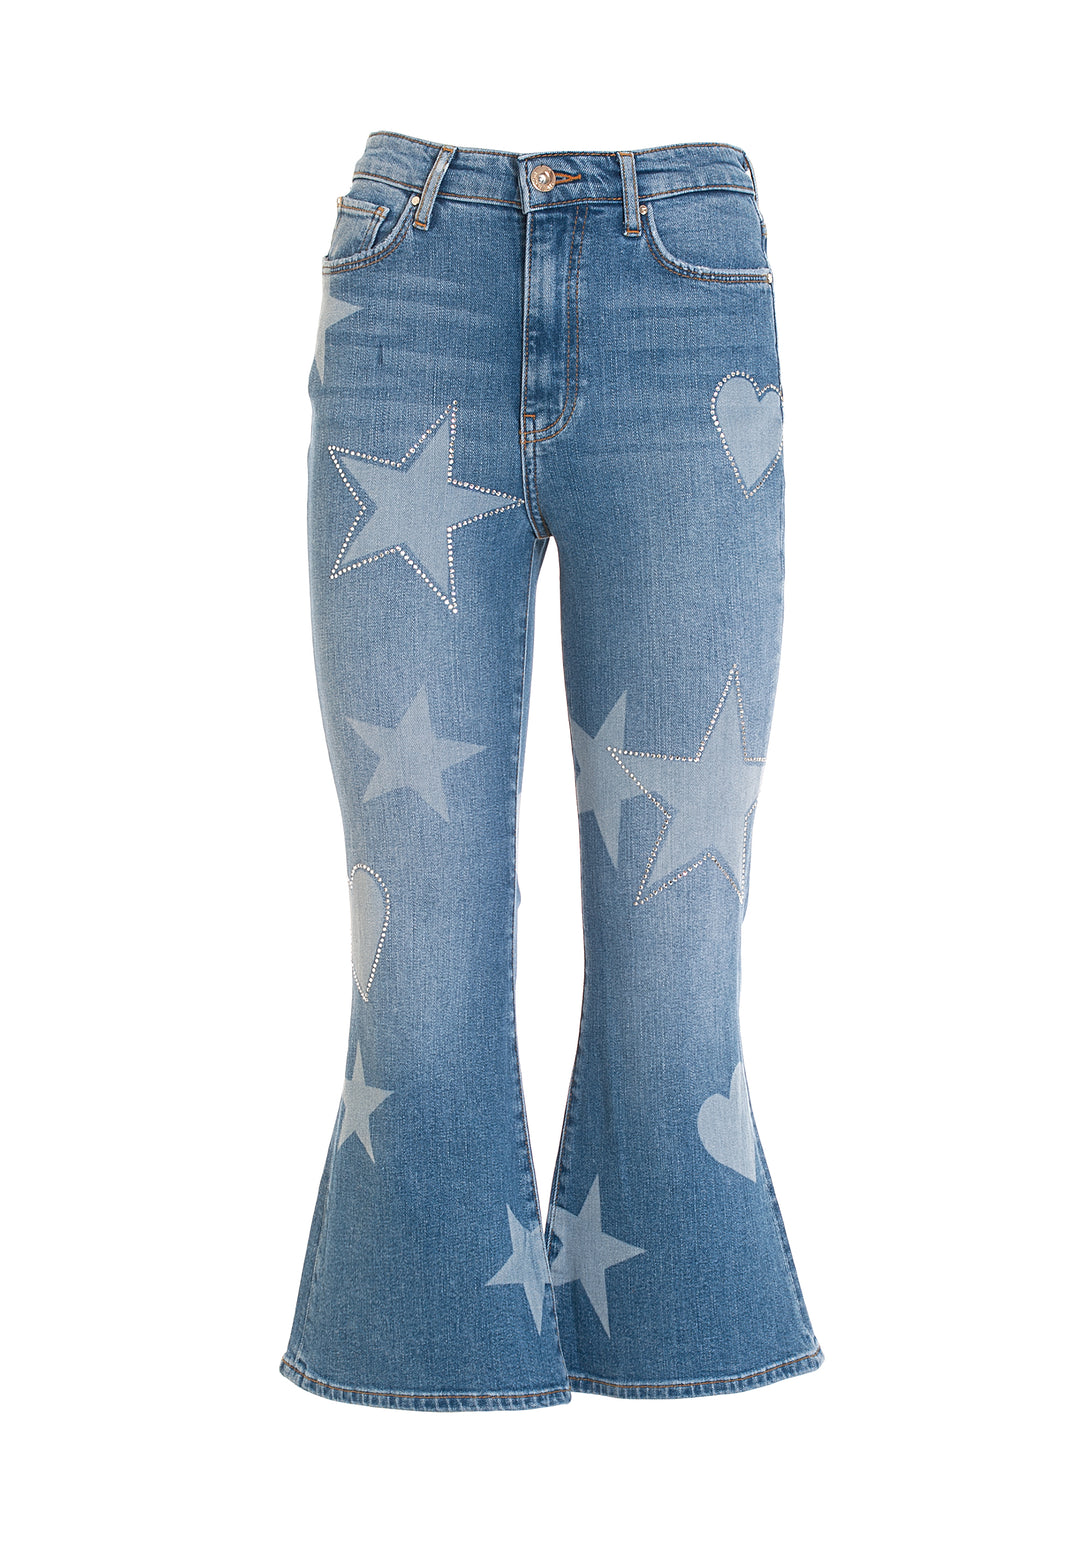 Jeans flare cropped in denim con fantasia simboli-FRACOMINA-FP22WV9006D41893-349-JN-24